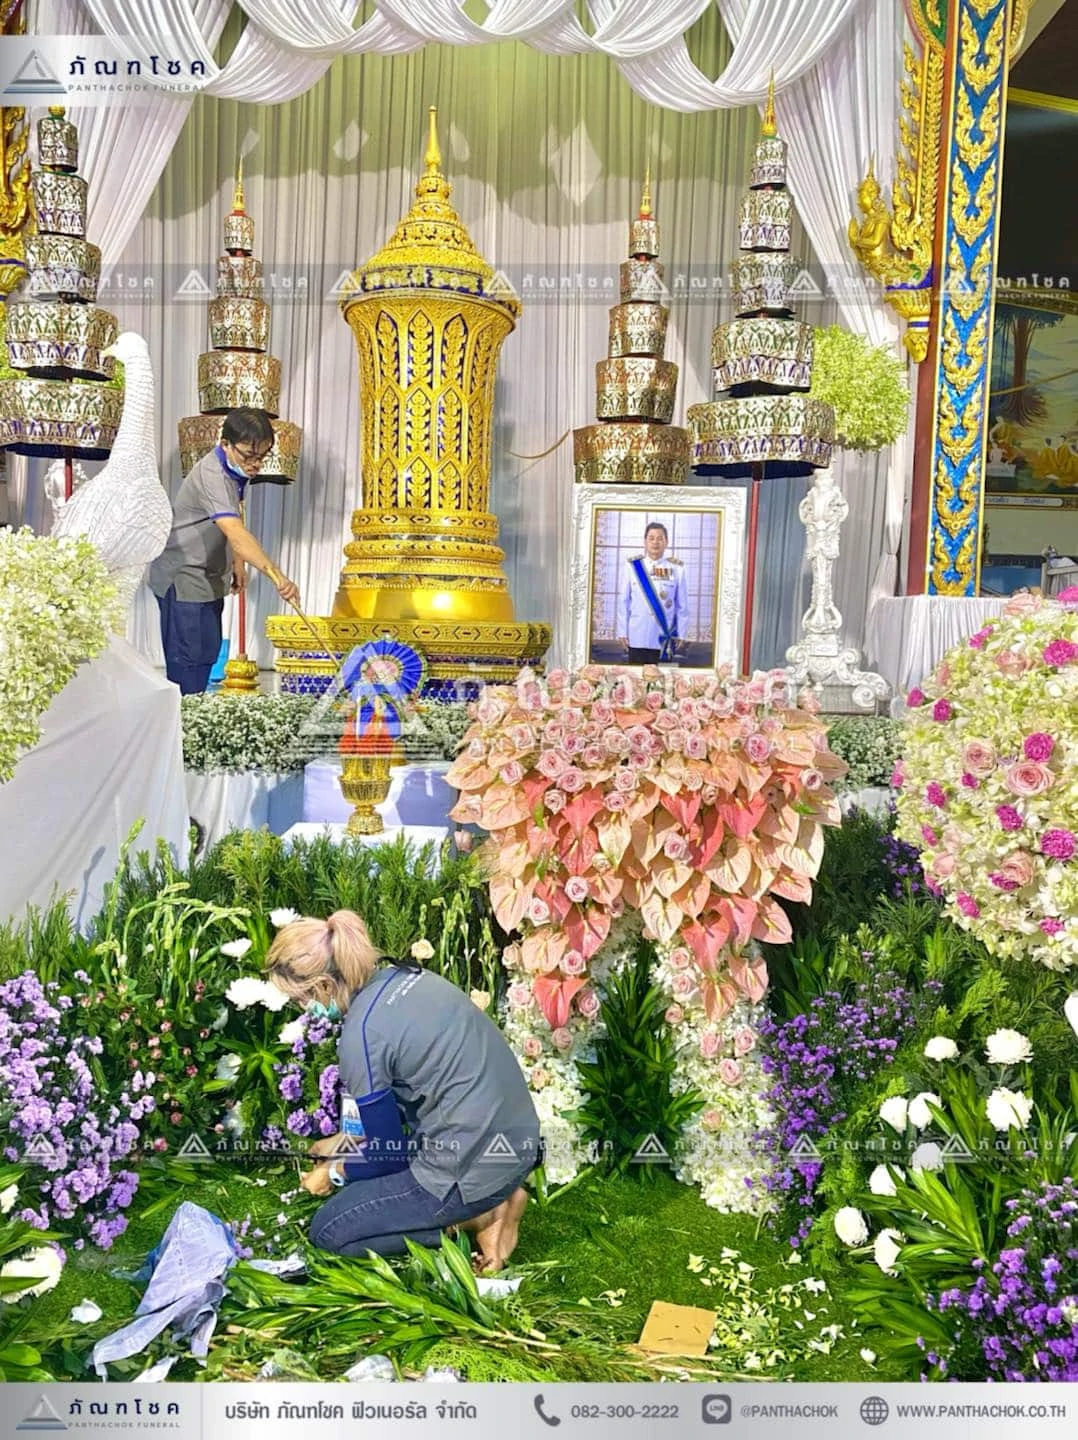 ดอกไม้หน้าโกศพระราชทาน โทนสีชมพู จัดสวนหน้าศพ สวนดอกไม้หน้าศพอลังการ